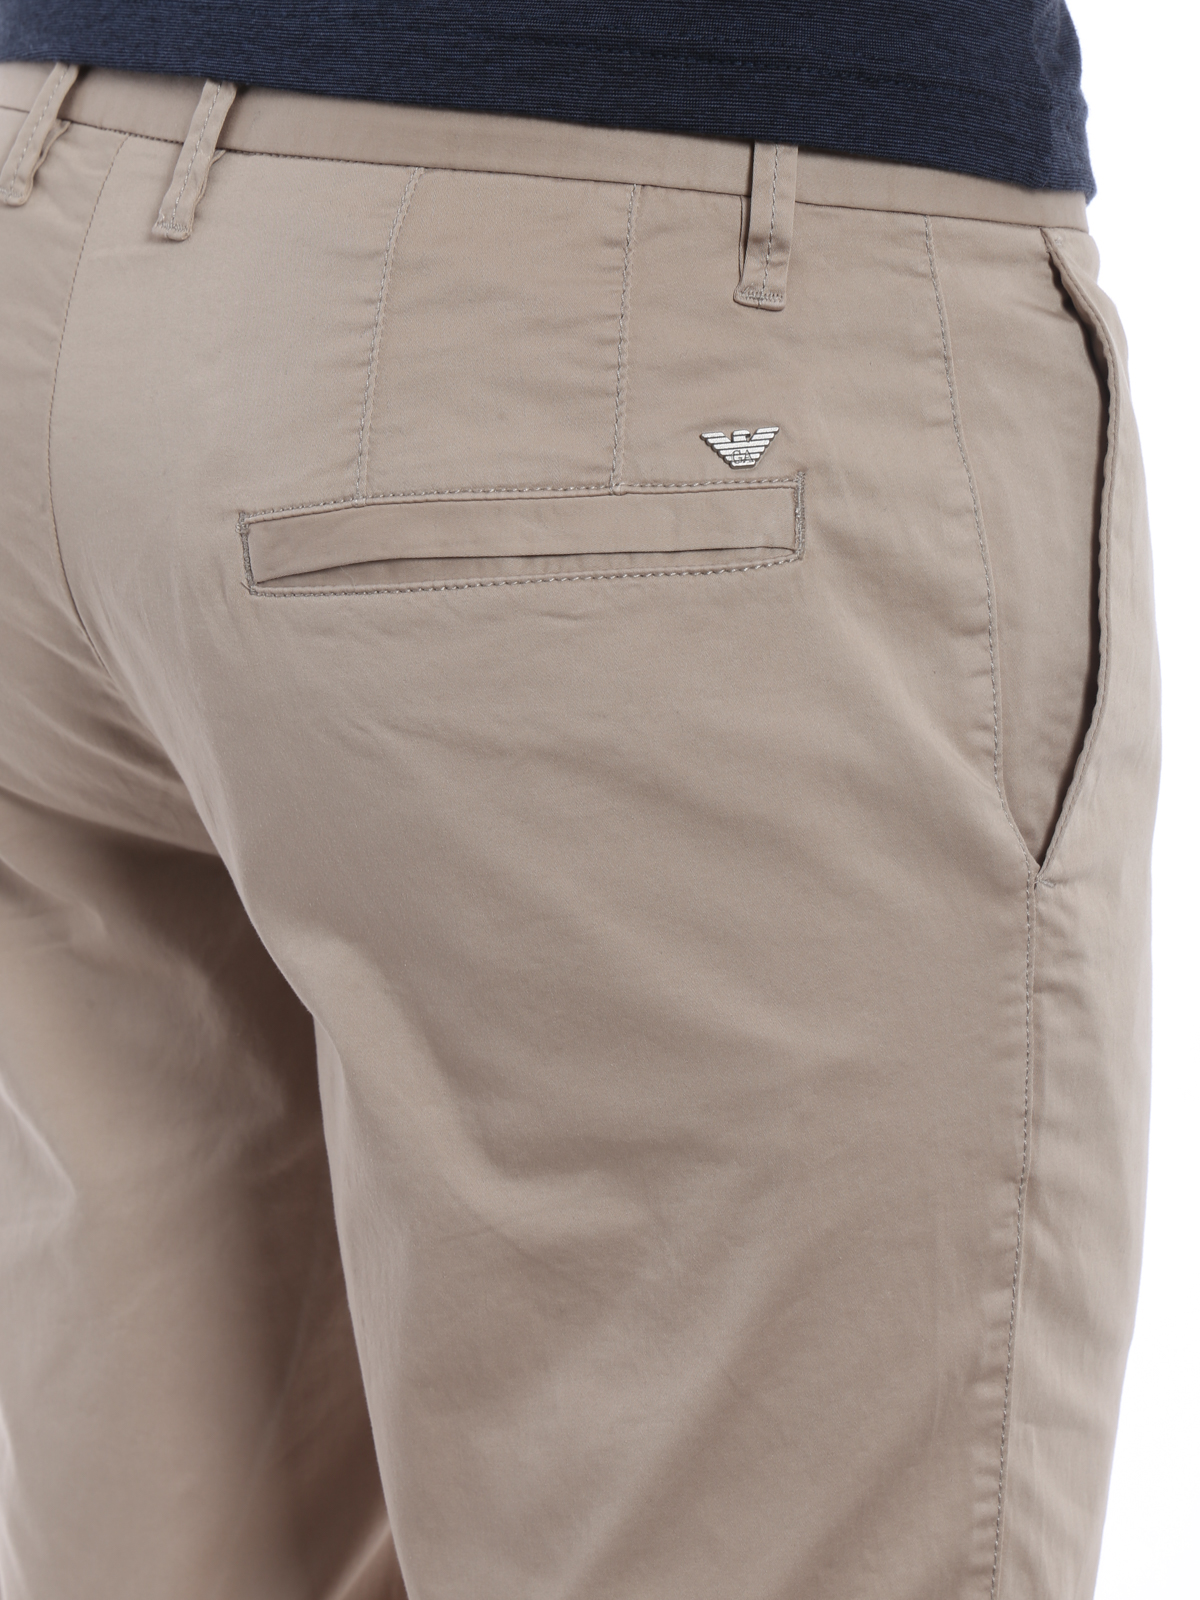 Casual trousers Emporio Armani - Beige stretch cotton chino trousers -  3Z1P151NEDZ0109